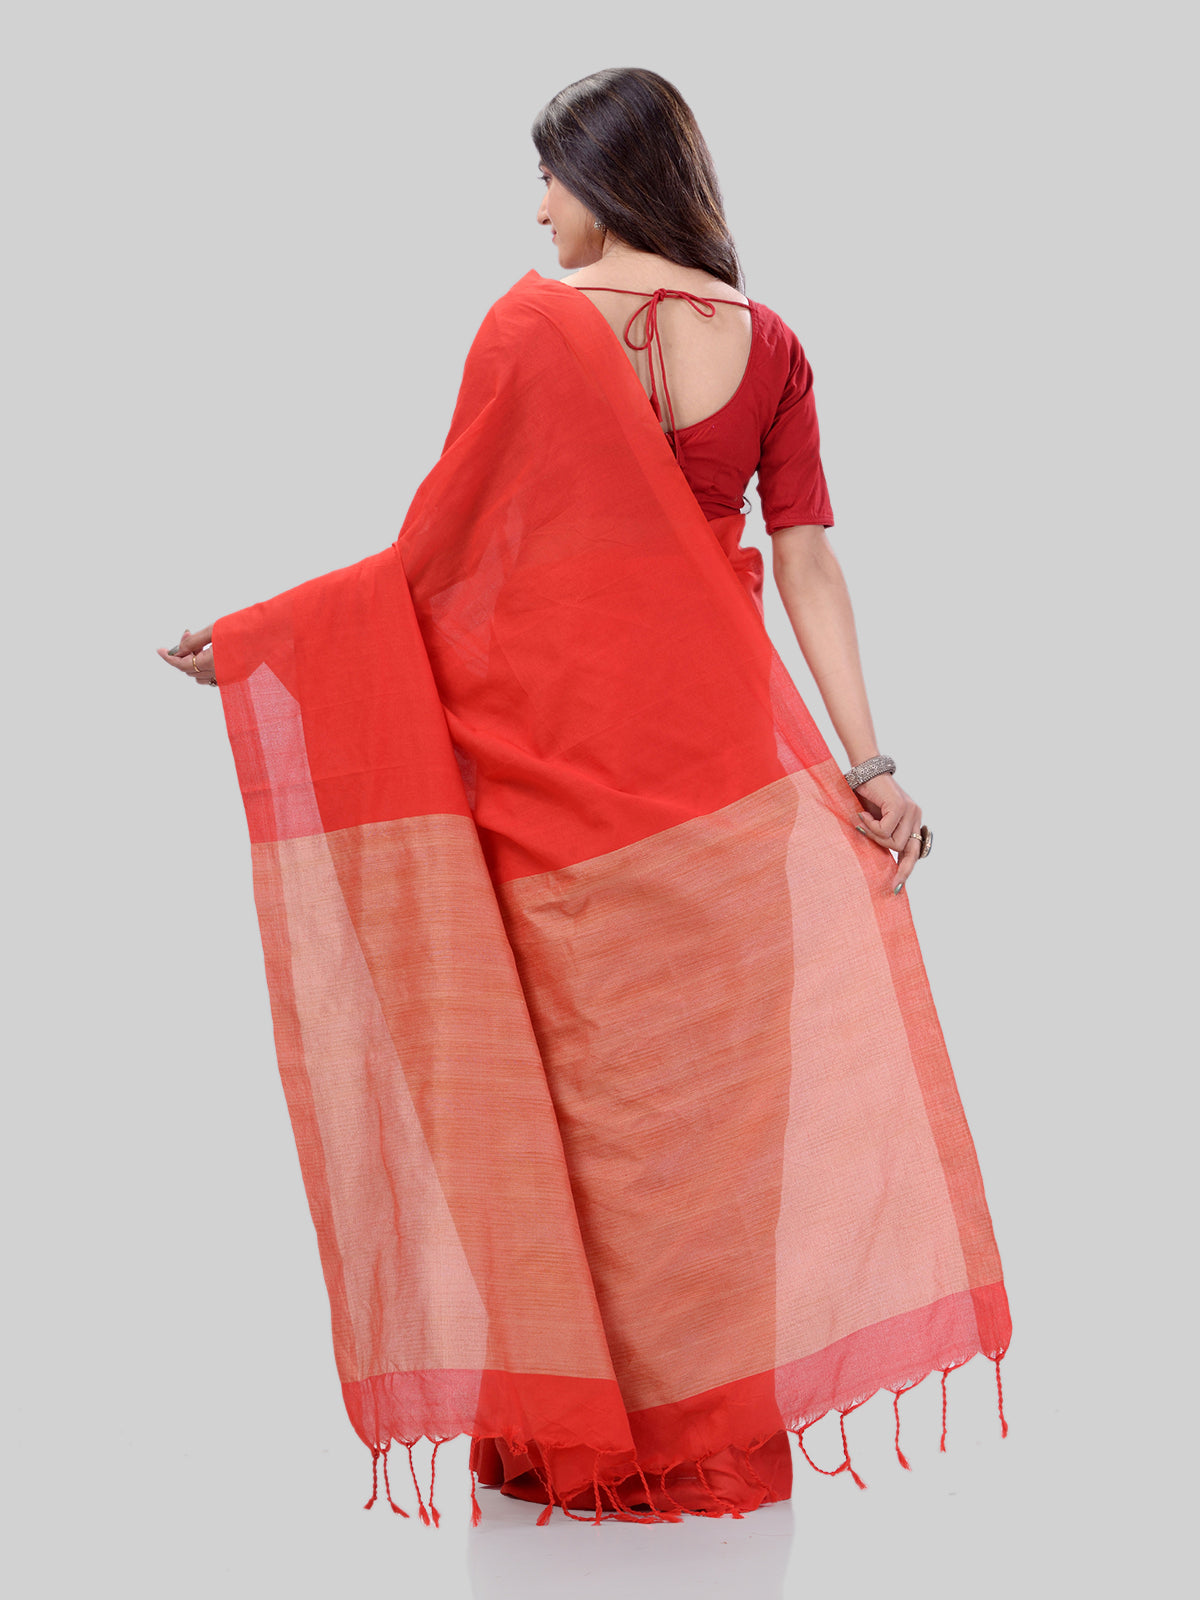 Women's Khadi Cotton Red Handloom Rupsagar Design Saree - Piyari Fashion